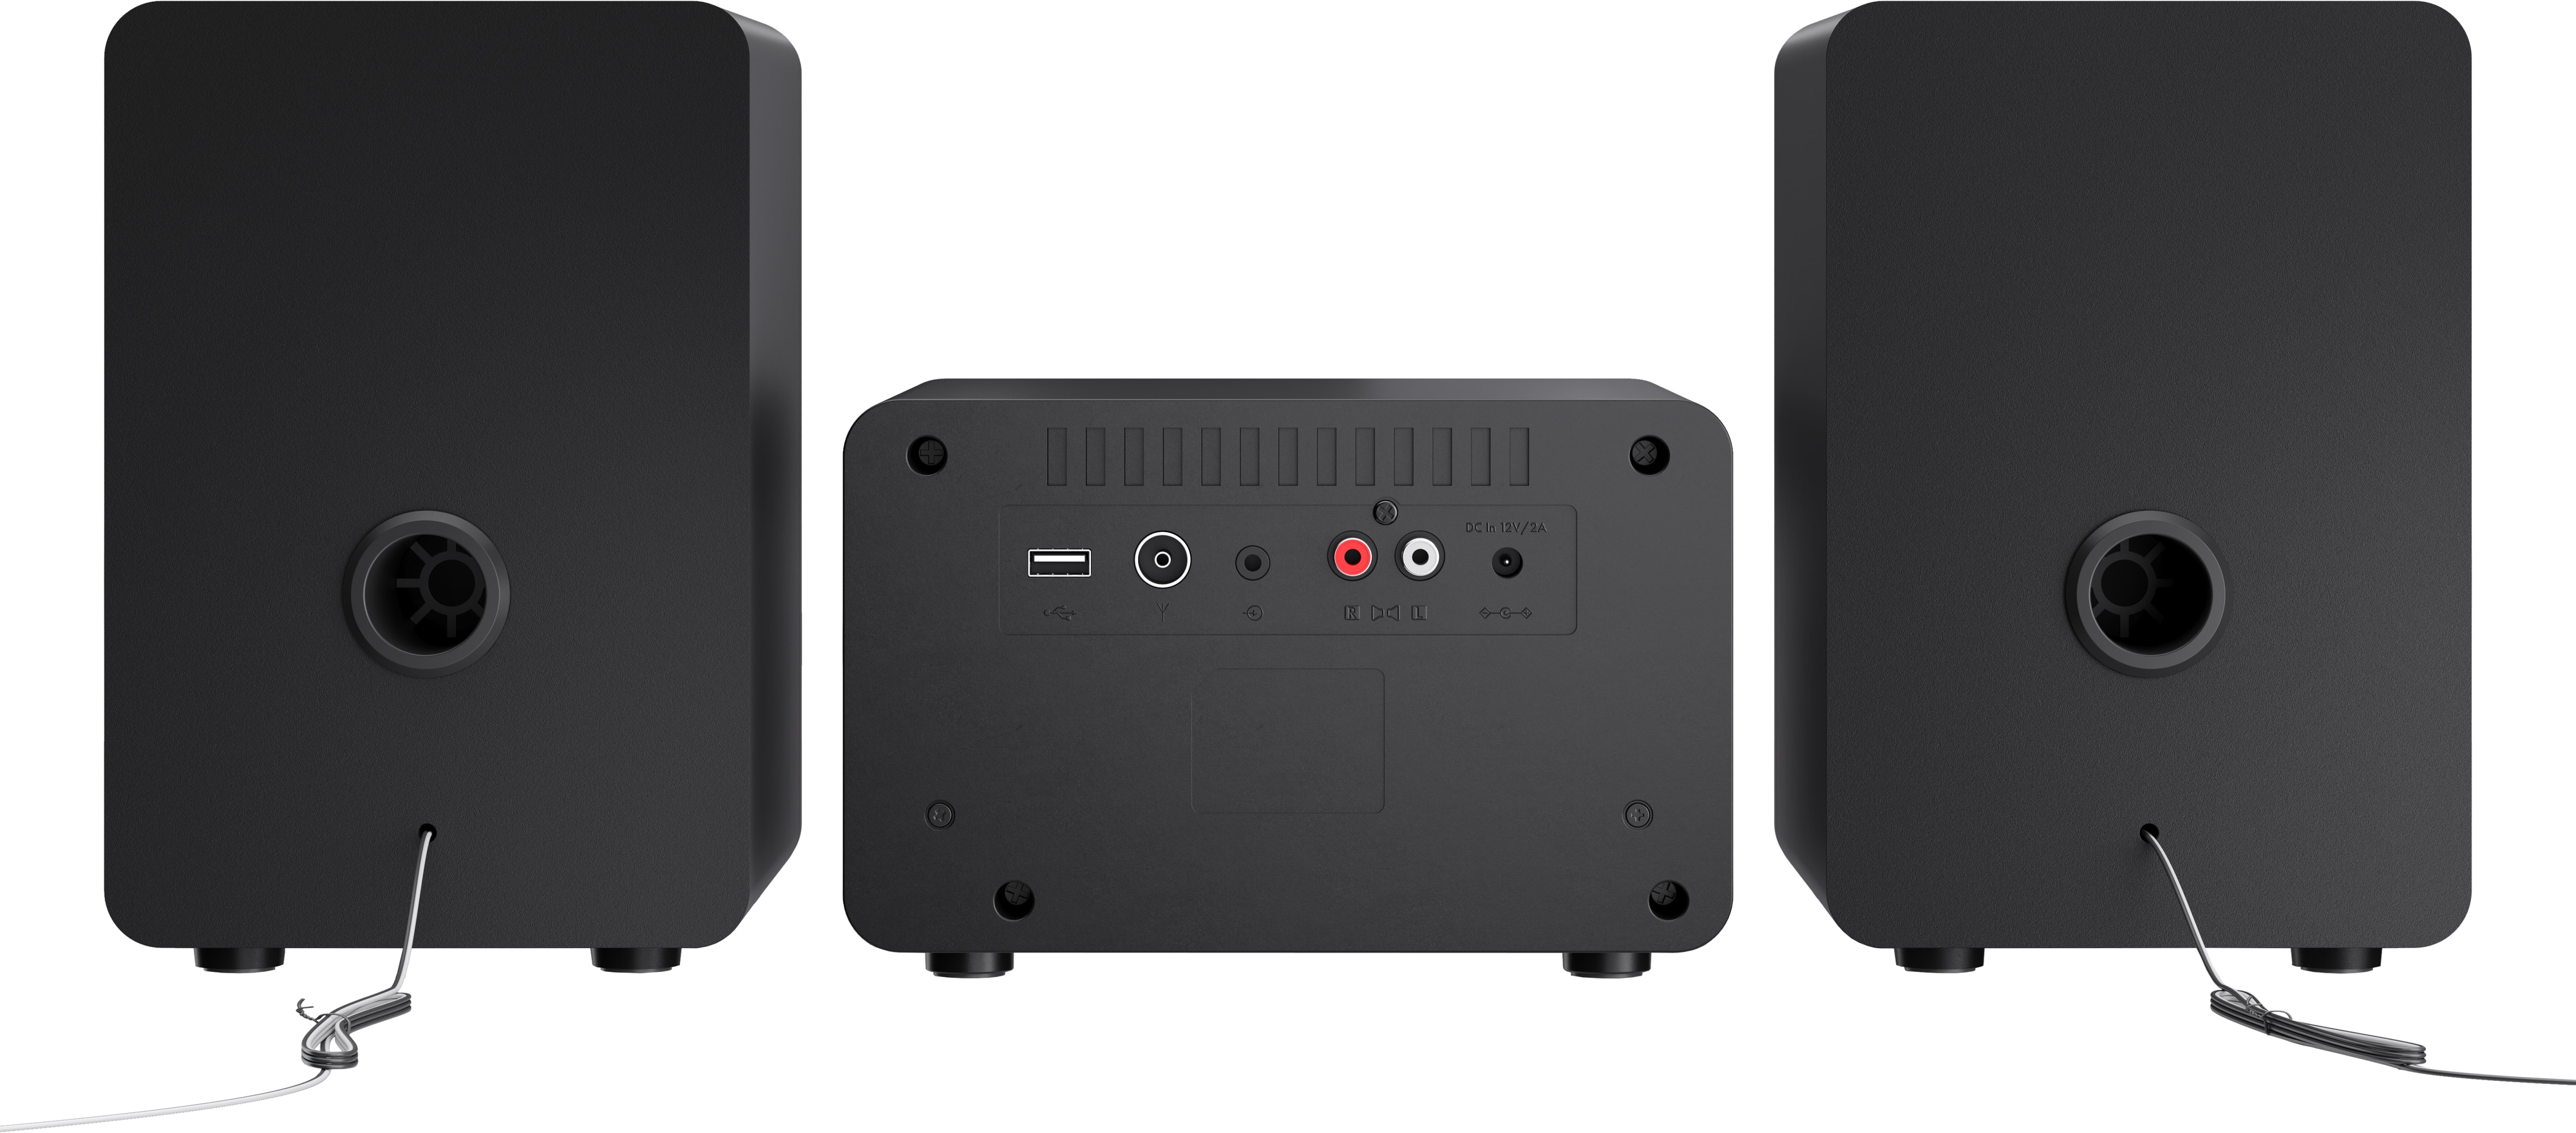 SHARP HiFi-Anlage XL-B520D, schwarz, DAB+, Bluetooth, MP3, CD-Laufwerk